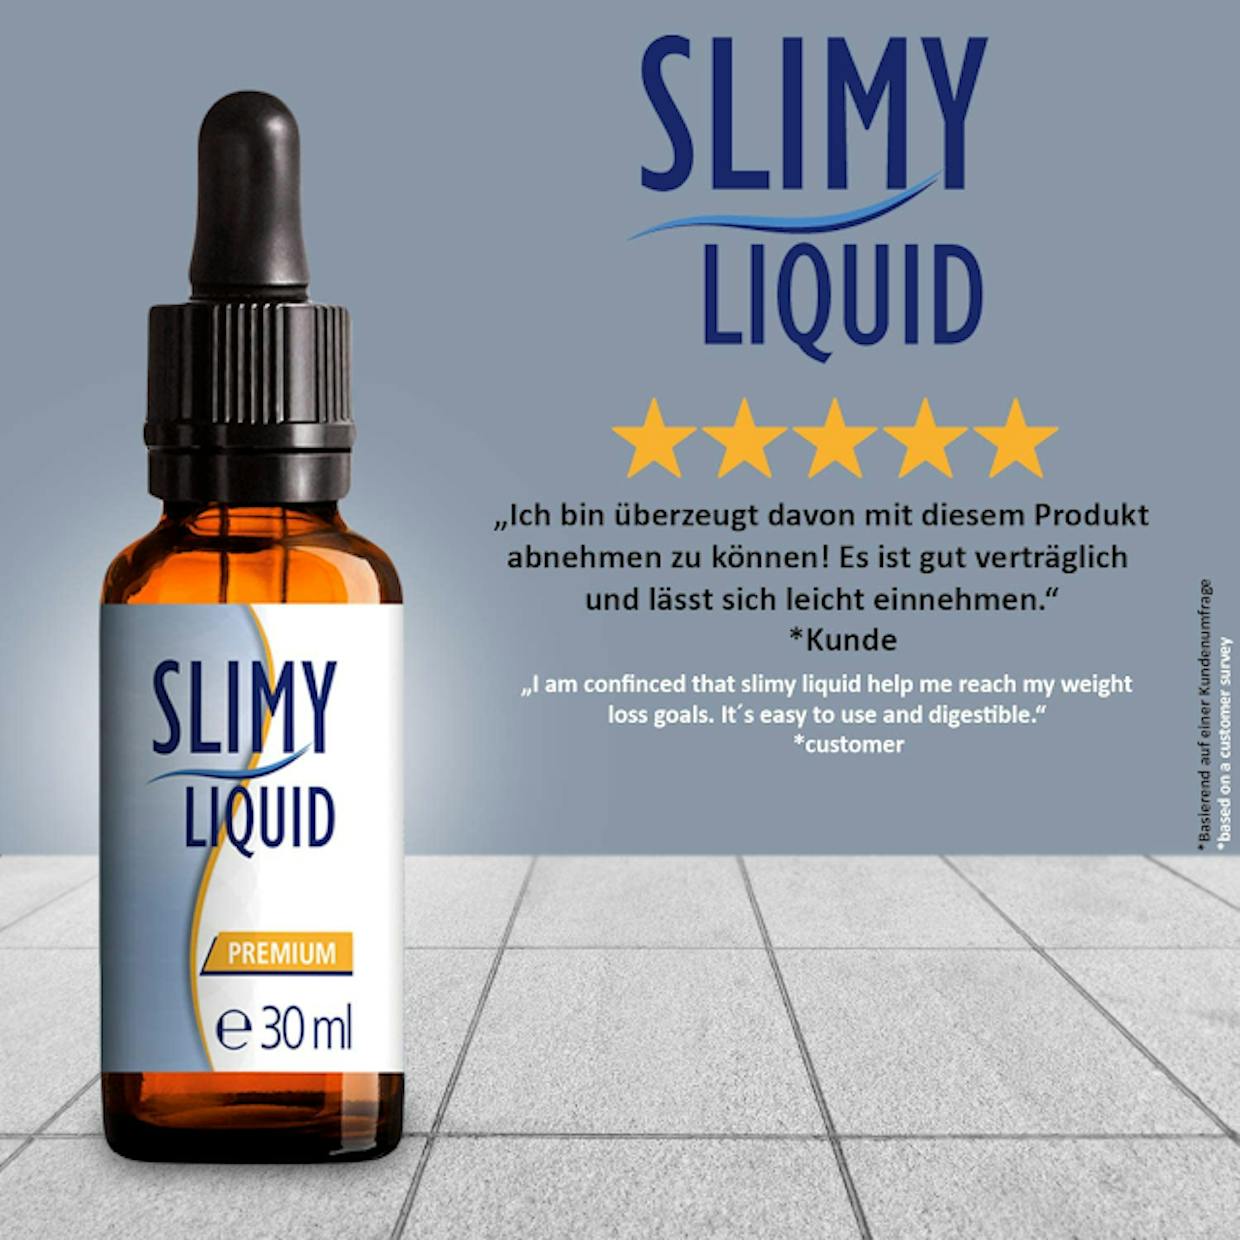 SlimyLiquid Erfahrungen: Abnehmen von überschüssigem Fett, keine Nebenwirkungen